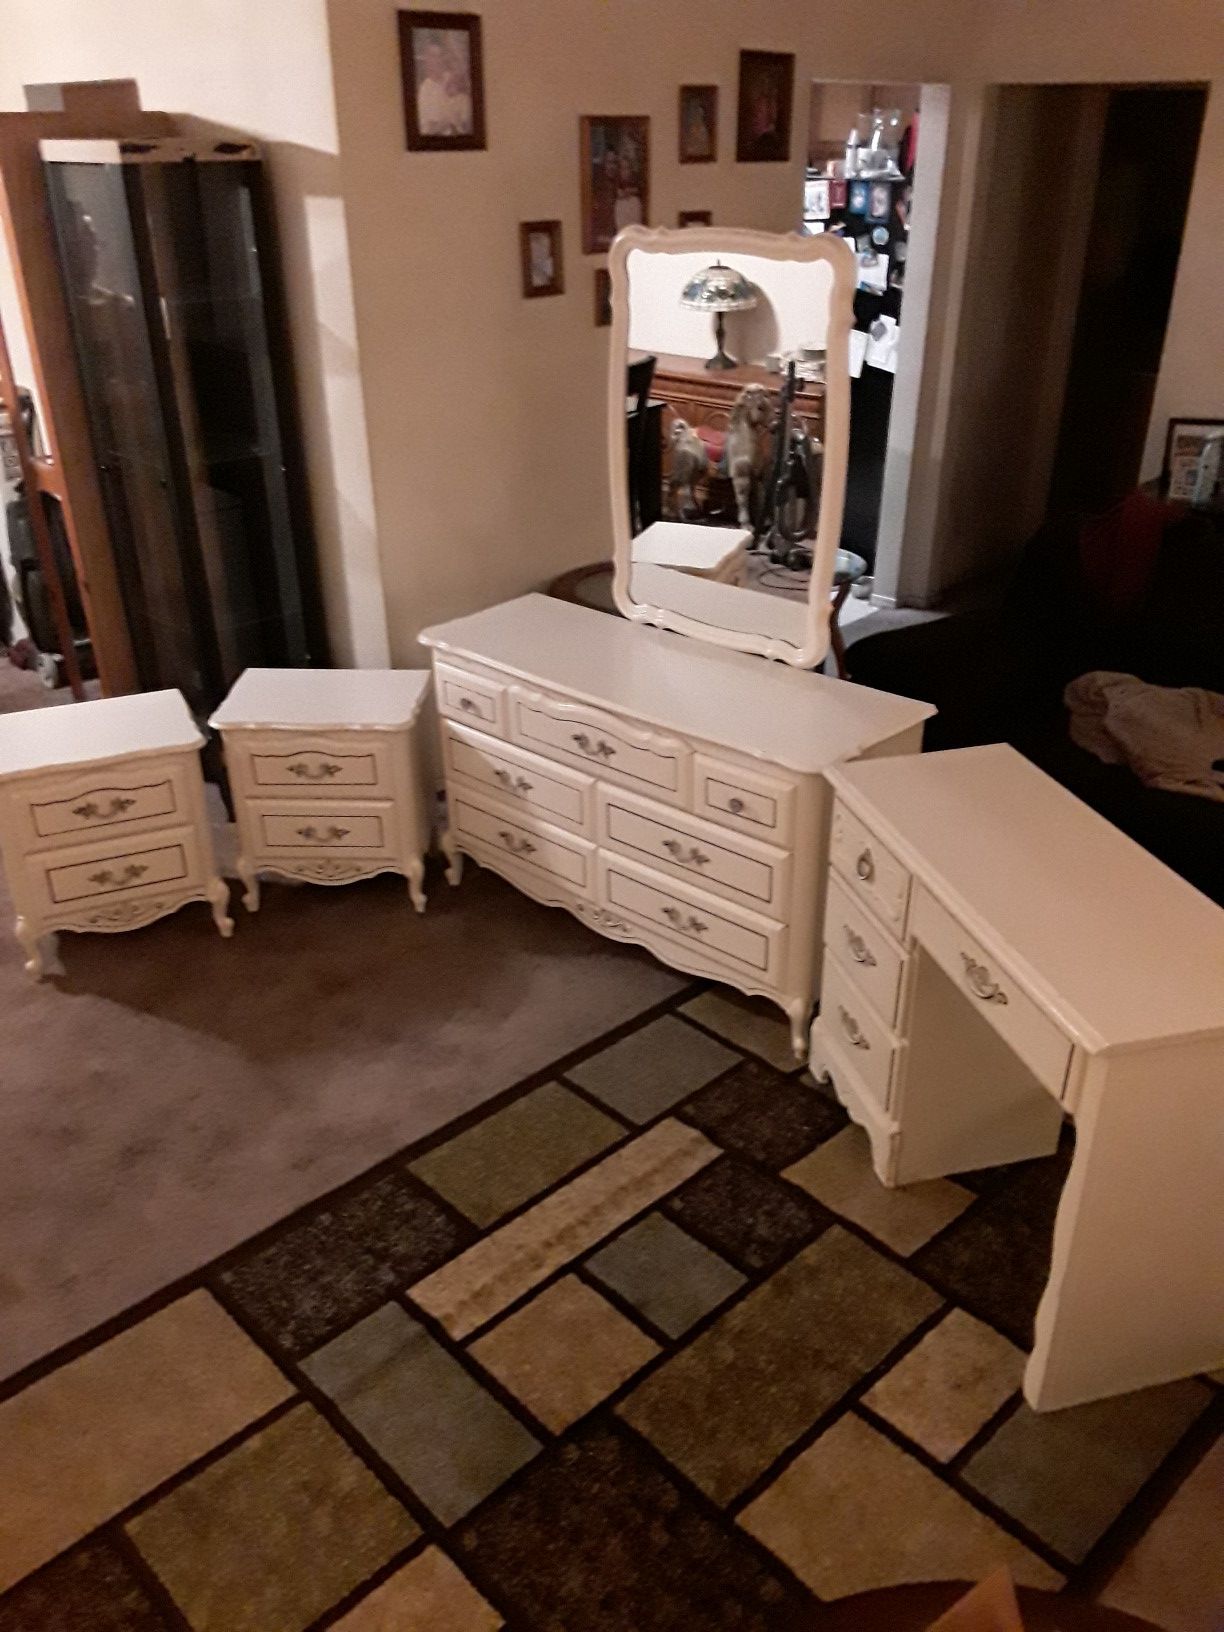 Bedroom set 7 drawer dresser, desk, 2 nightstands and mirror.